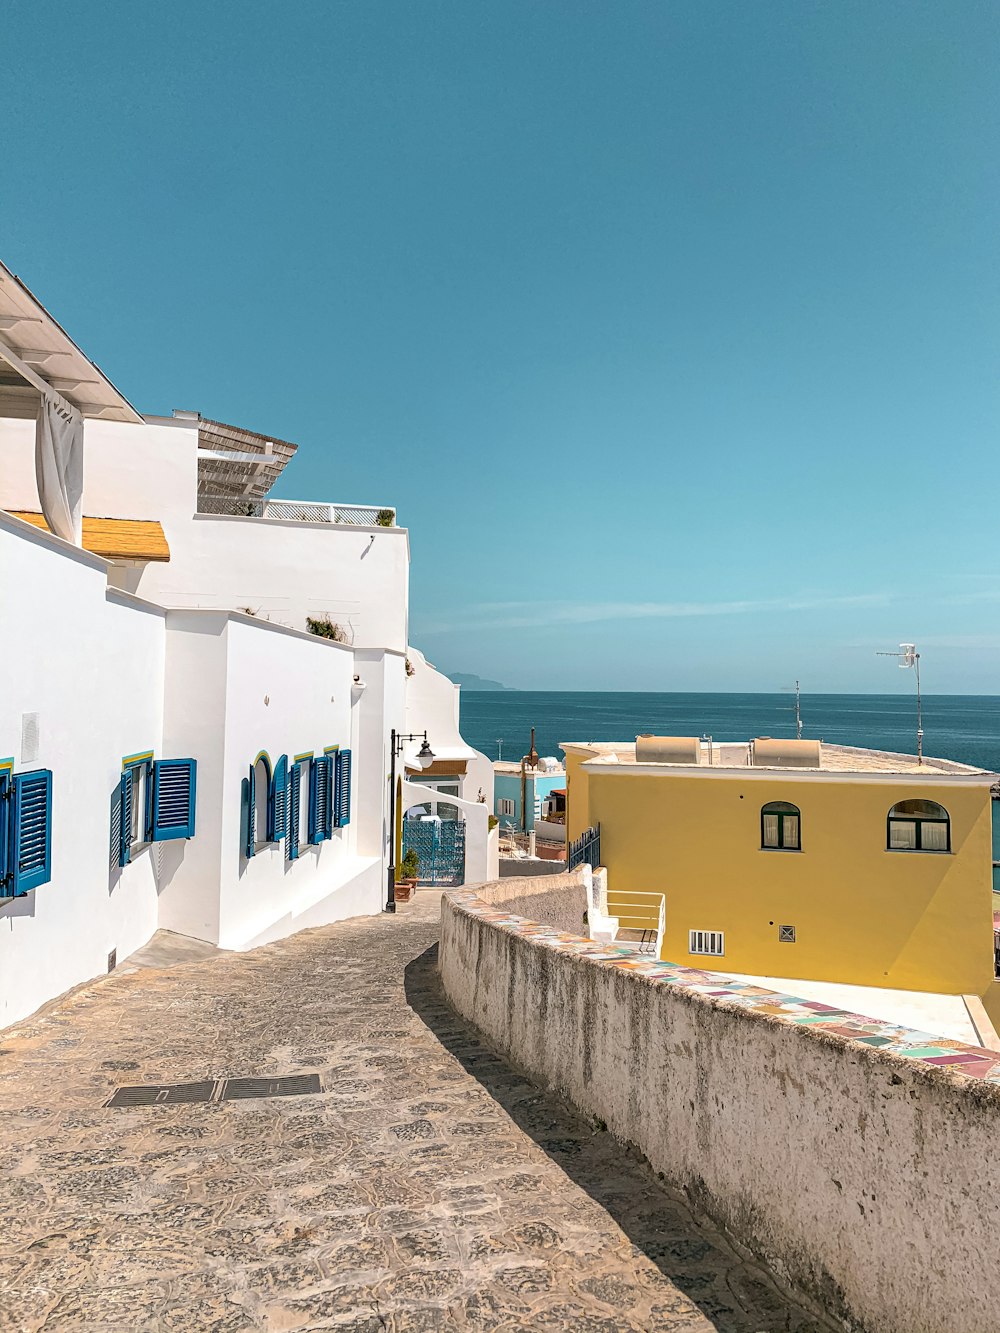 Casas de hormigón blanco y azul cerca del mar durante el día